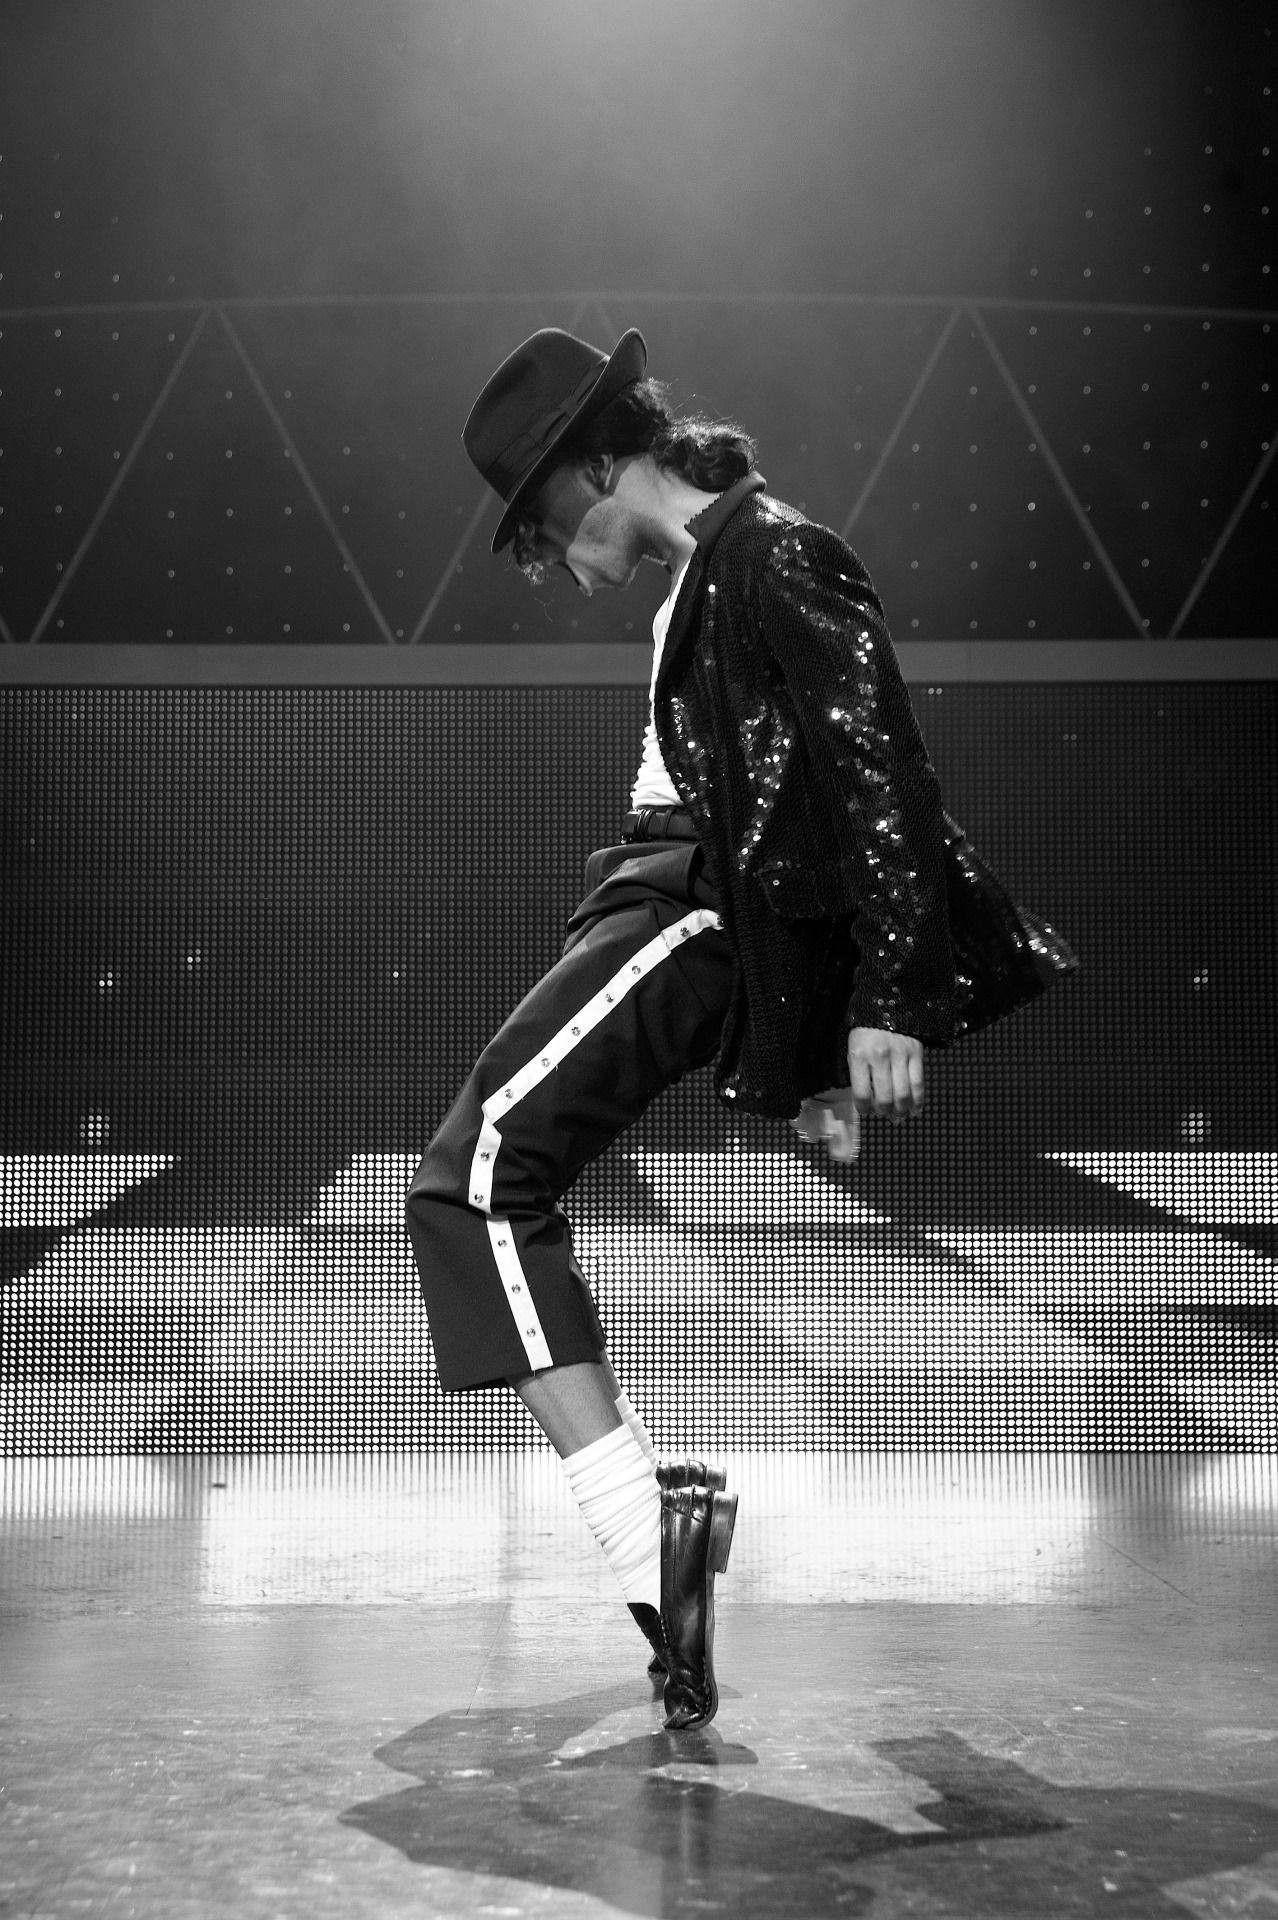 마이클 잭슨 라이브 배경 화면,댄스,검정색과 흰색,힙합 댄스,스트리트 댄스,공연